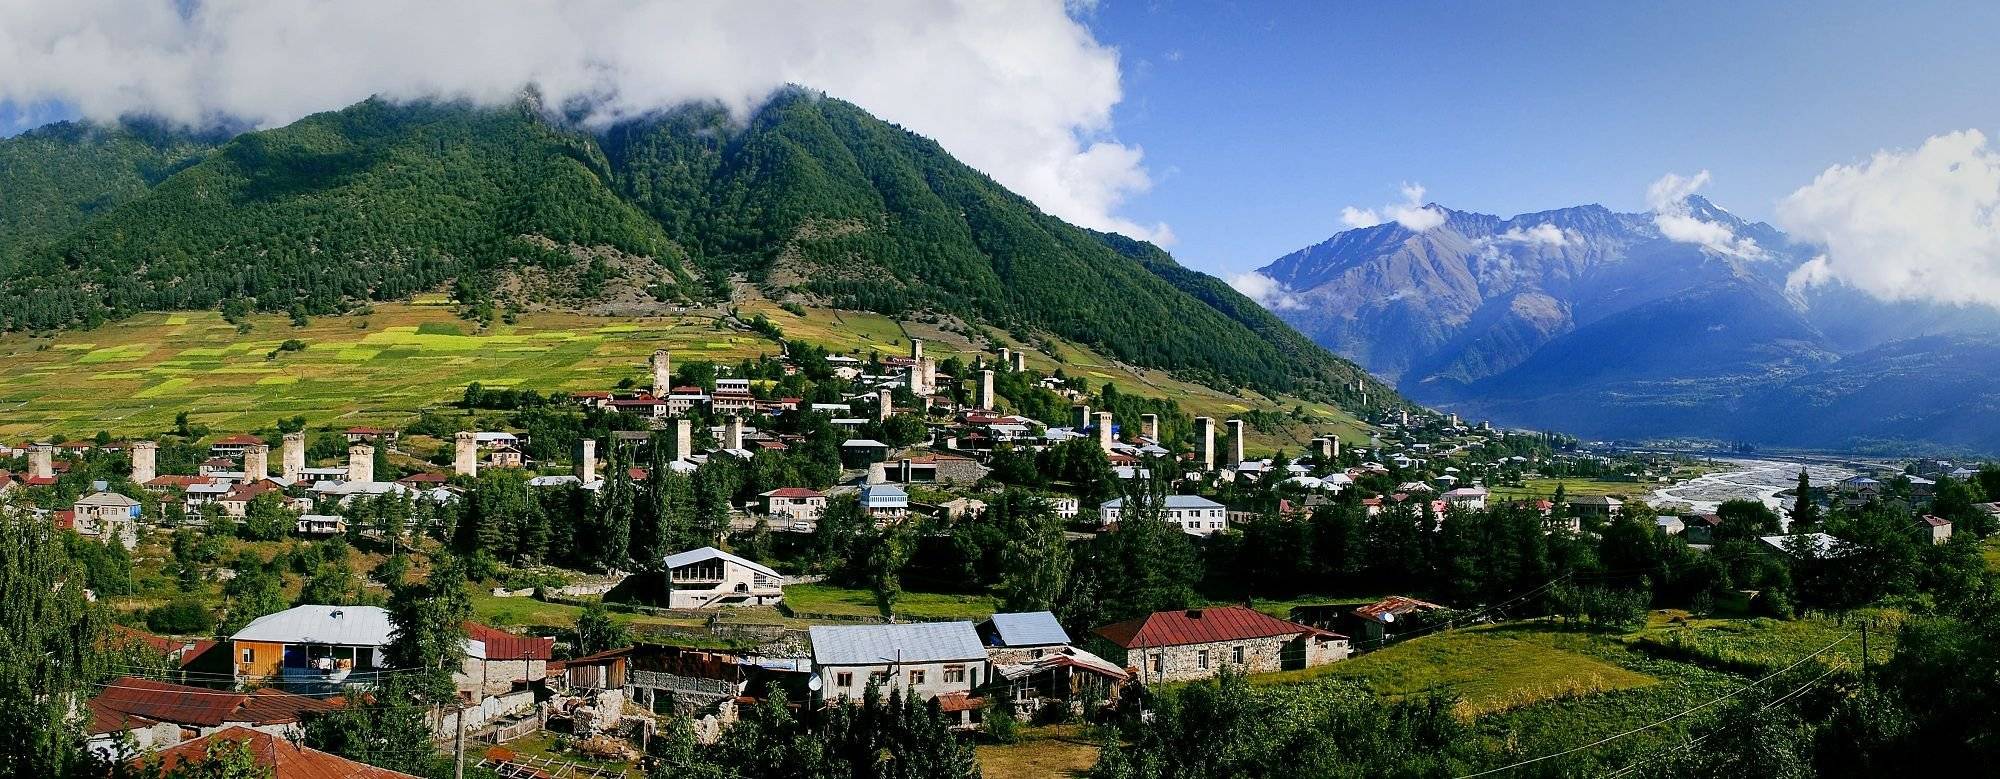 Paesaggi di montagna e la bellezza dello Svaneti